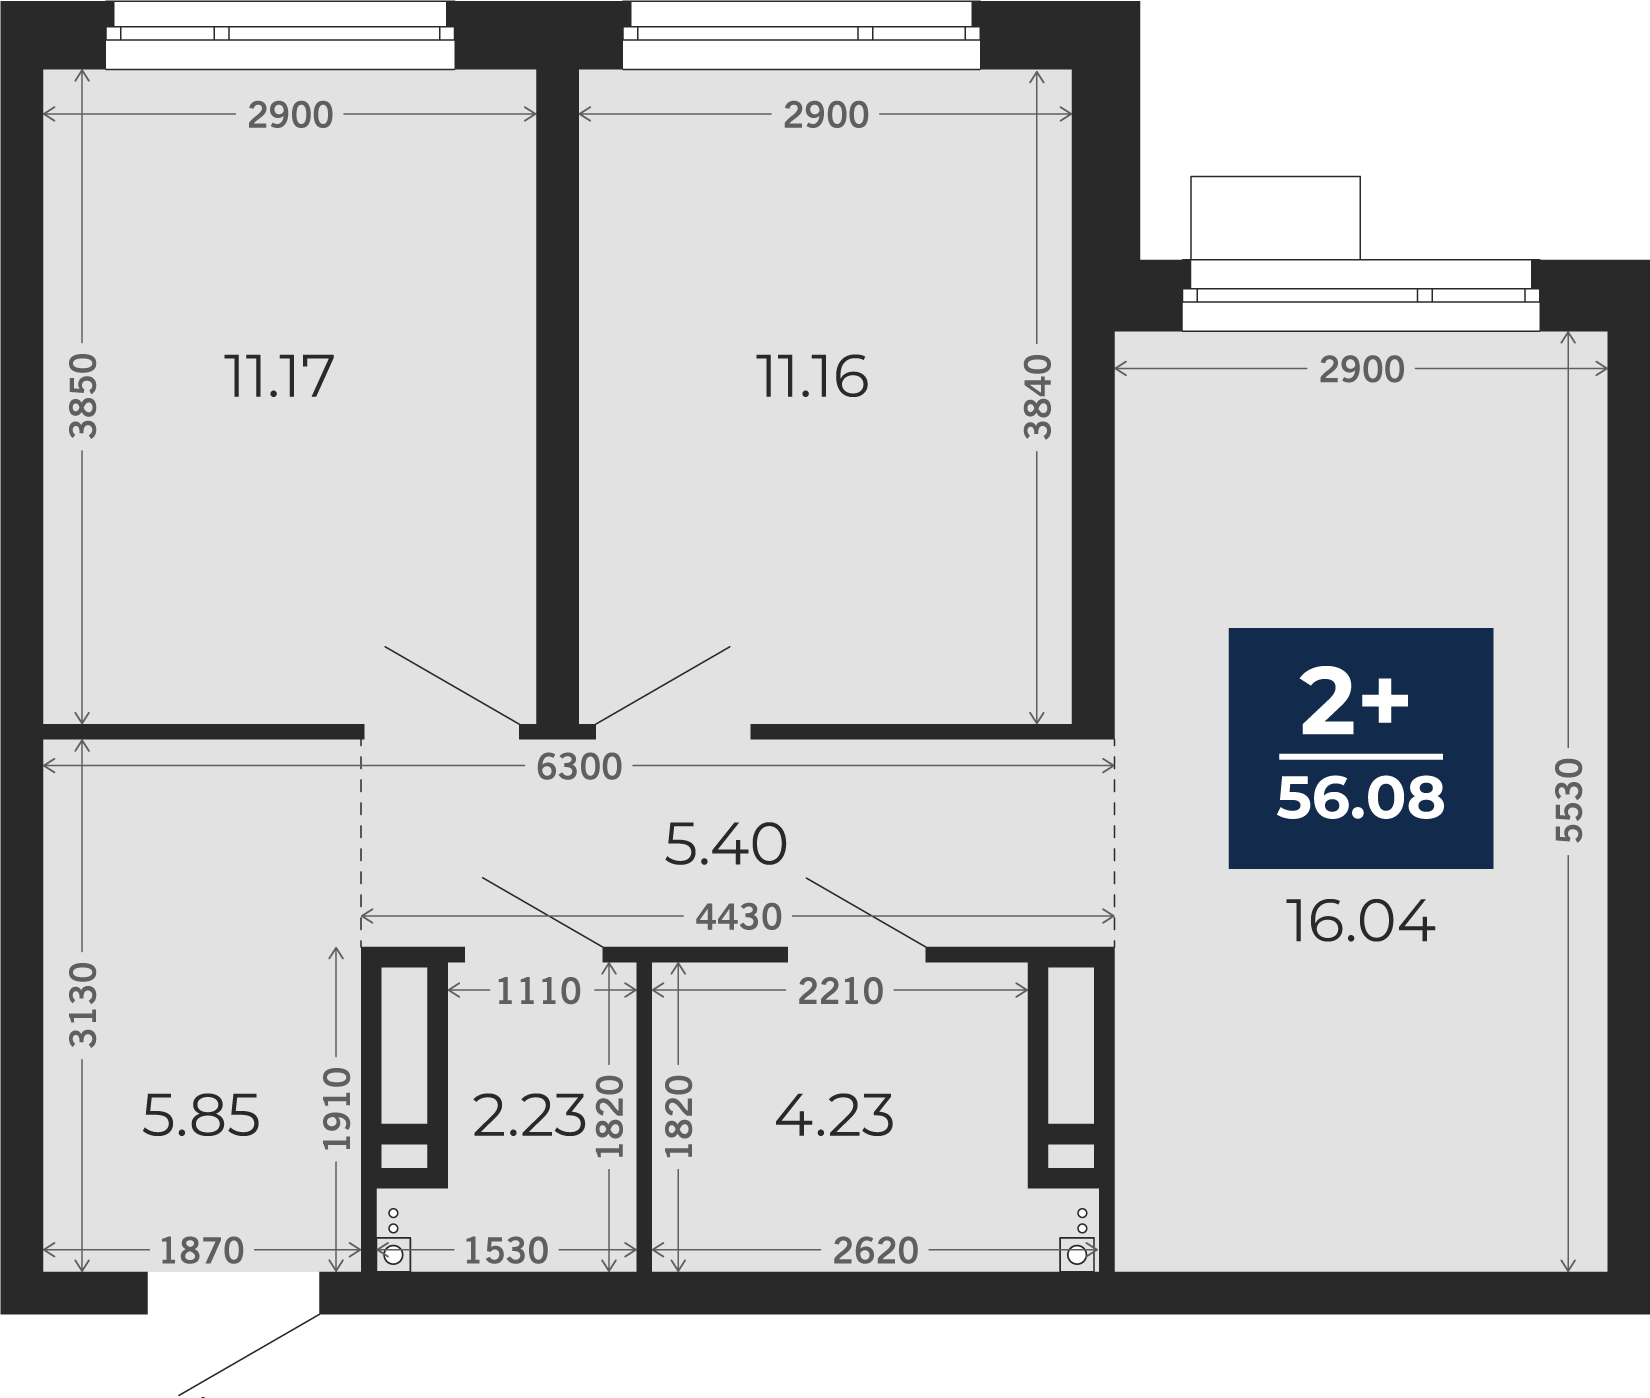 Квартира № 264, 2-комнатная, 56.08 кв. м, 16 этаж